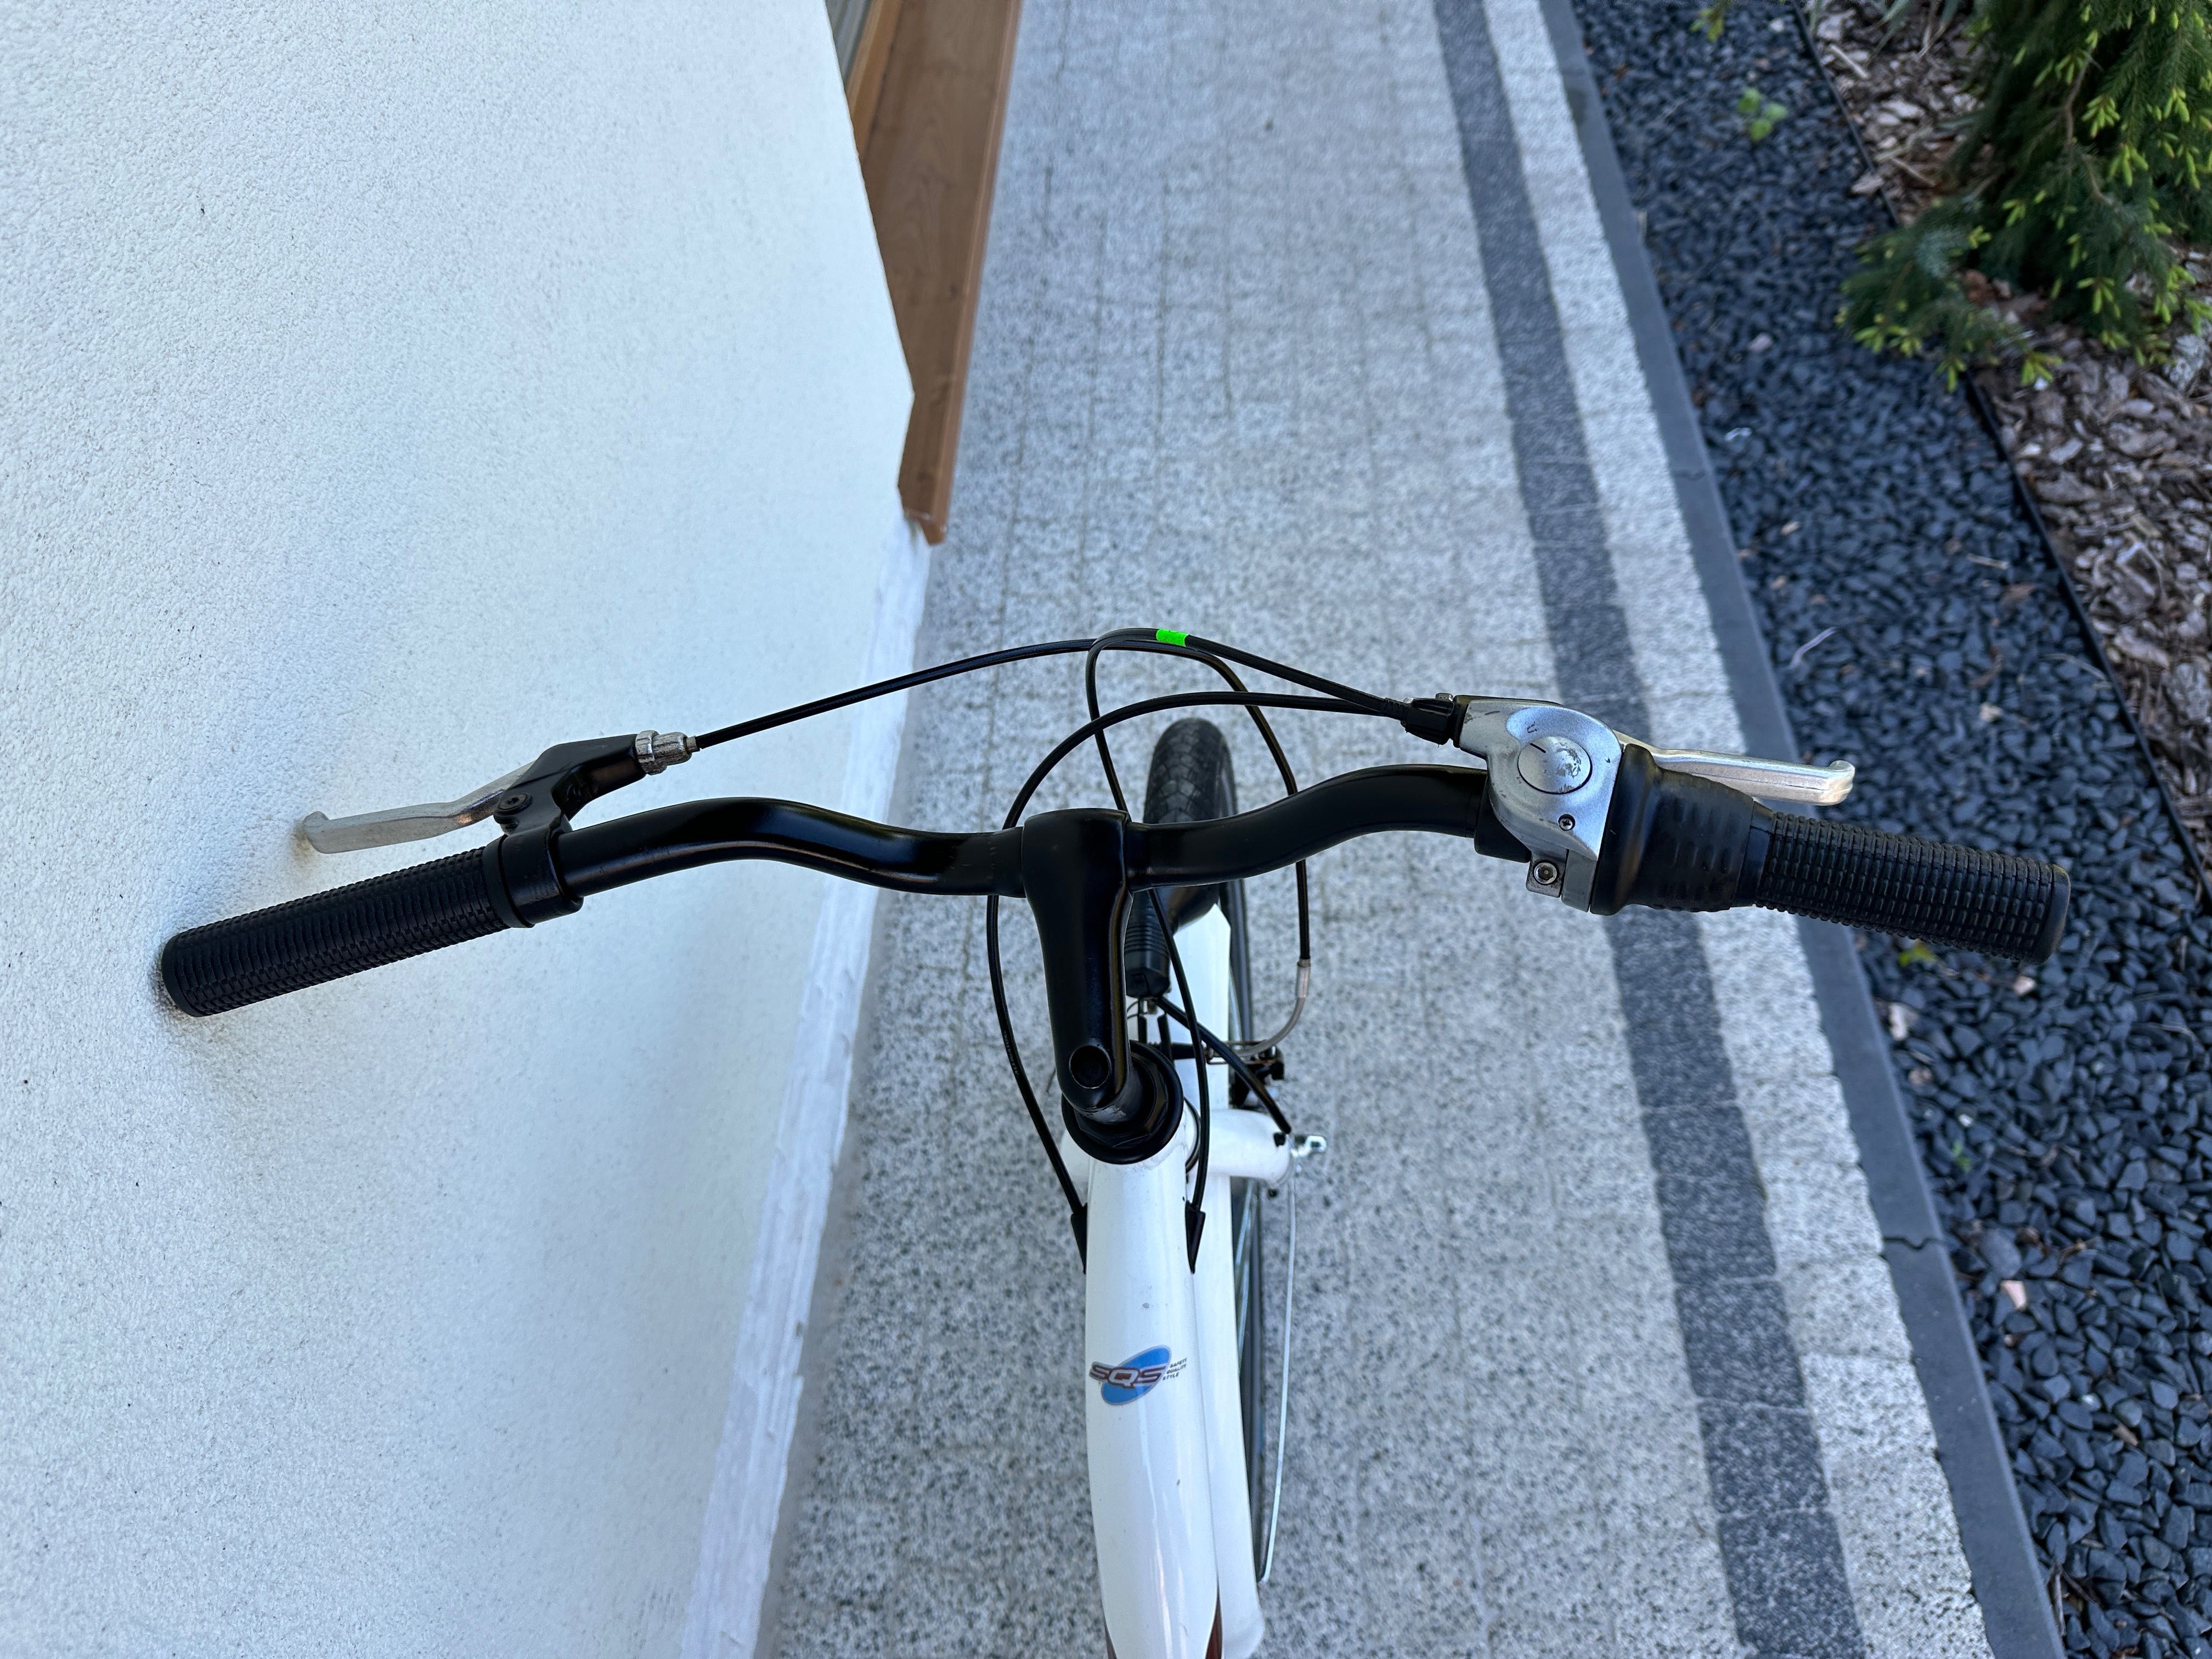 Rower SCOOLBIKE - koła 24, aluminiowy, Nexus 7b, kontra, prądnica